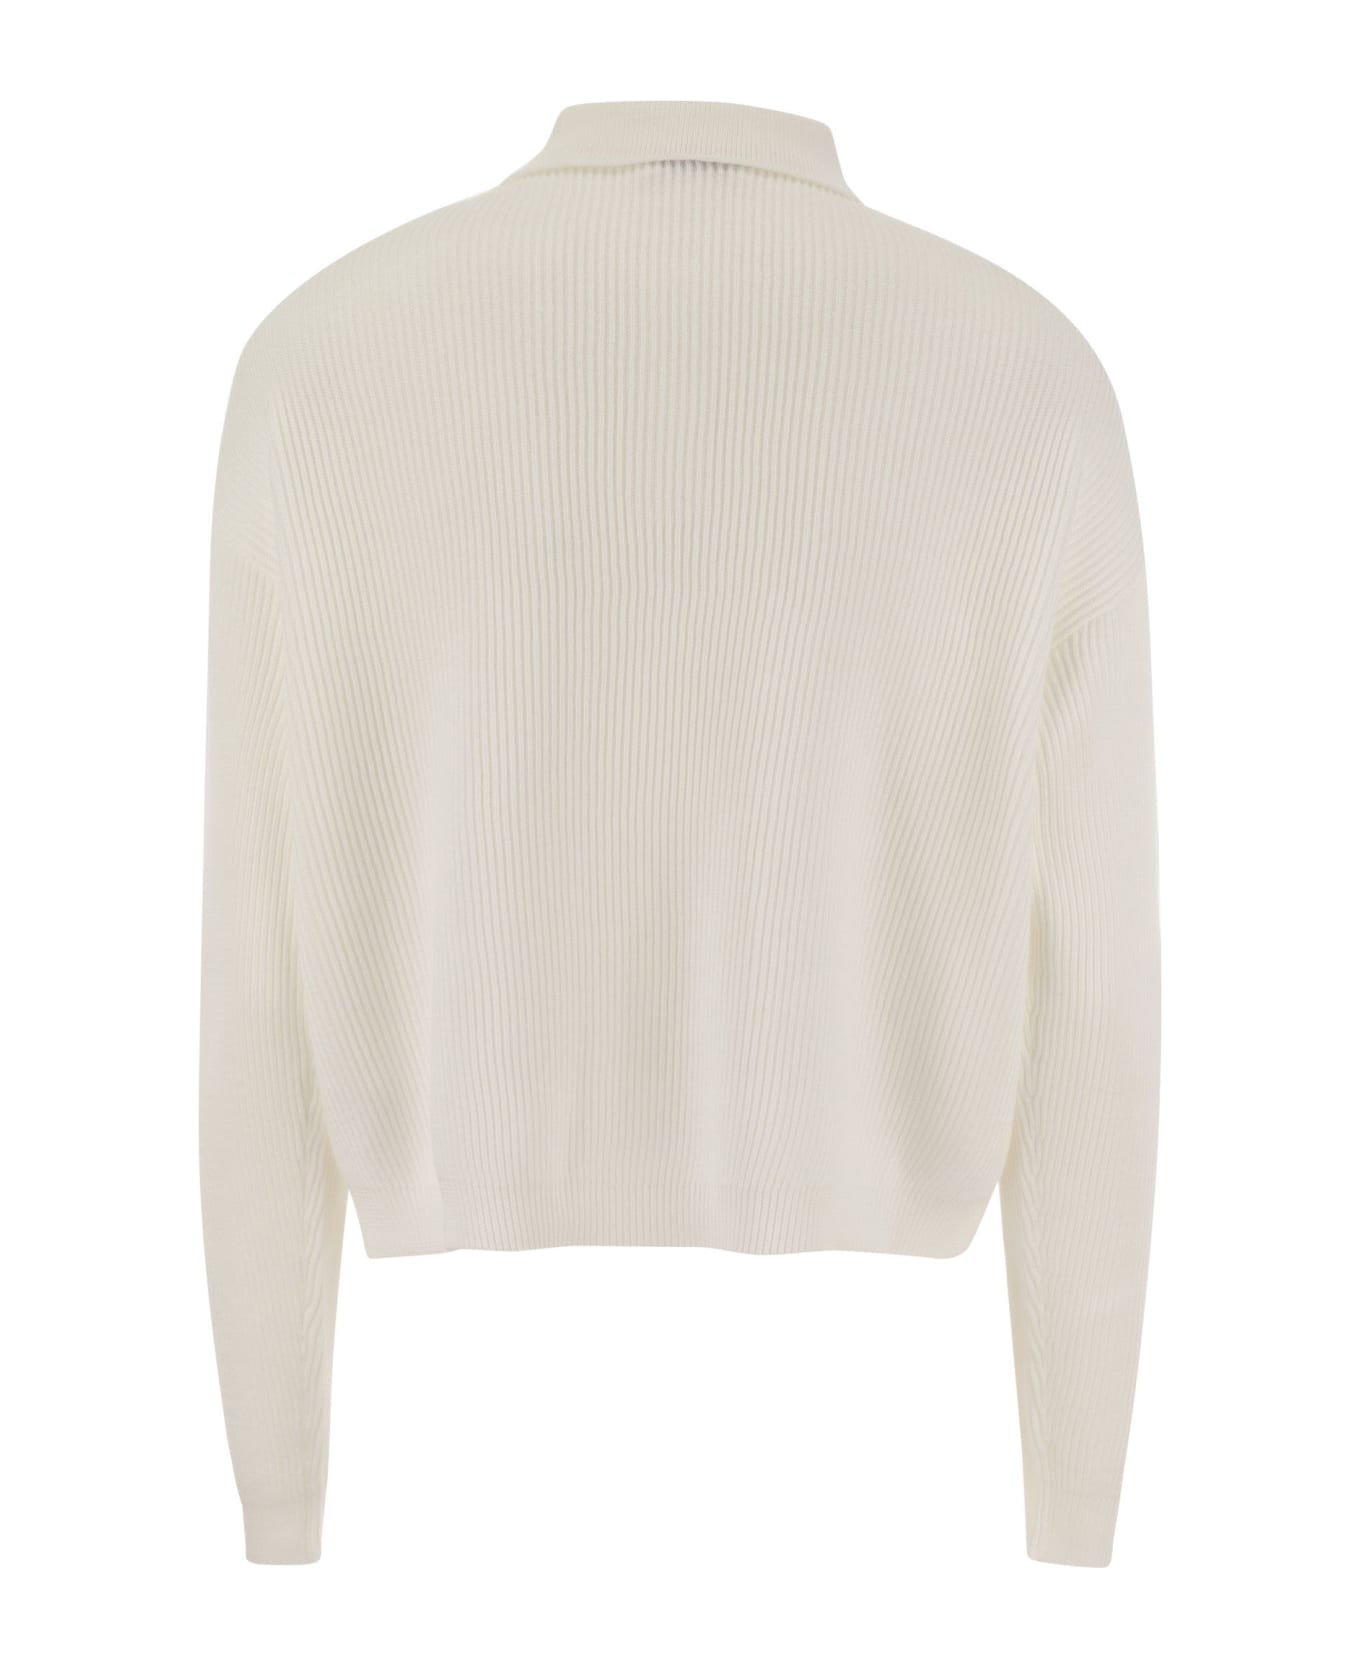 Brunello Cucinelli English Rib Cotton Polo-style Jersey - White